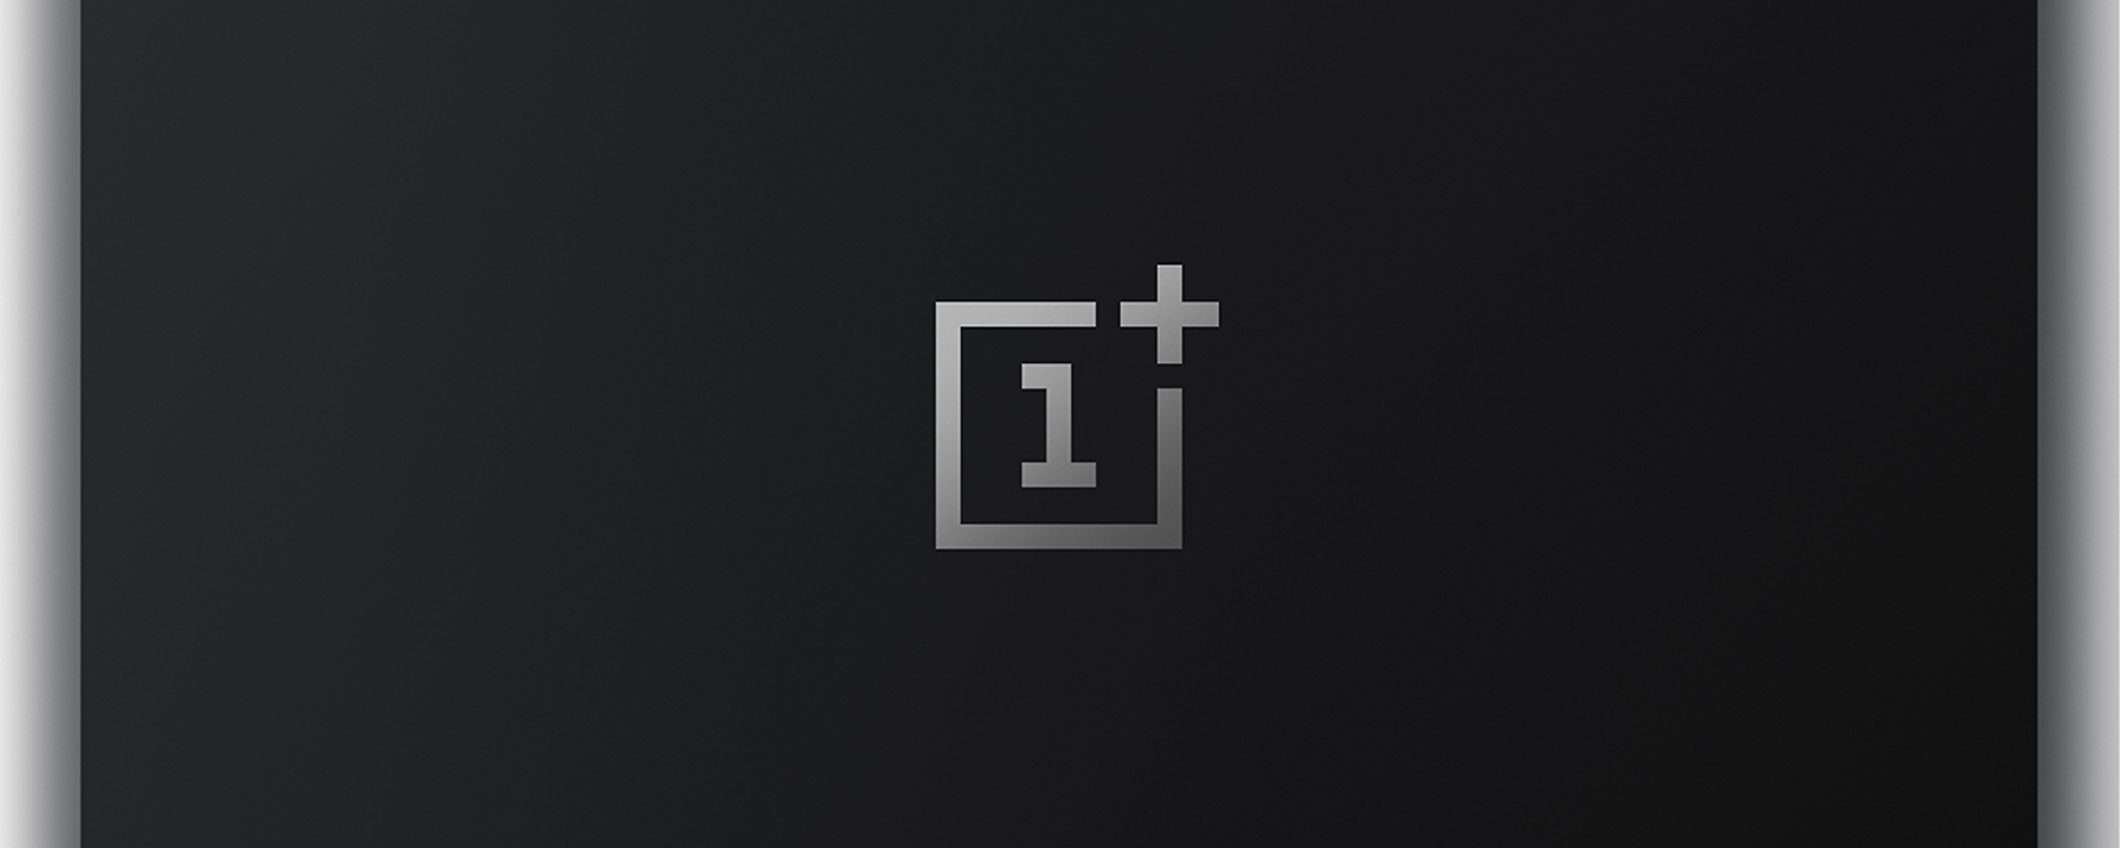 OnePlus TV: dopo gli smartphone, il televisore